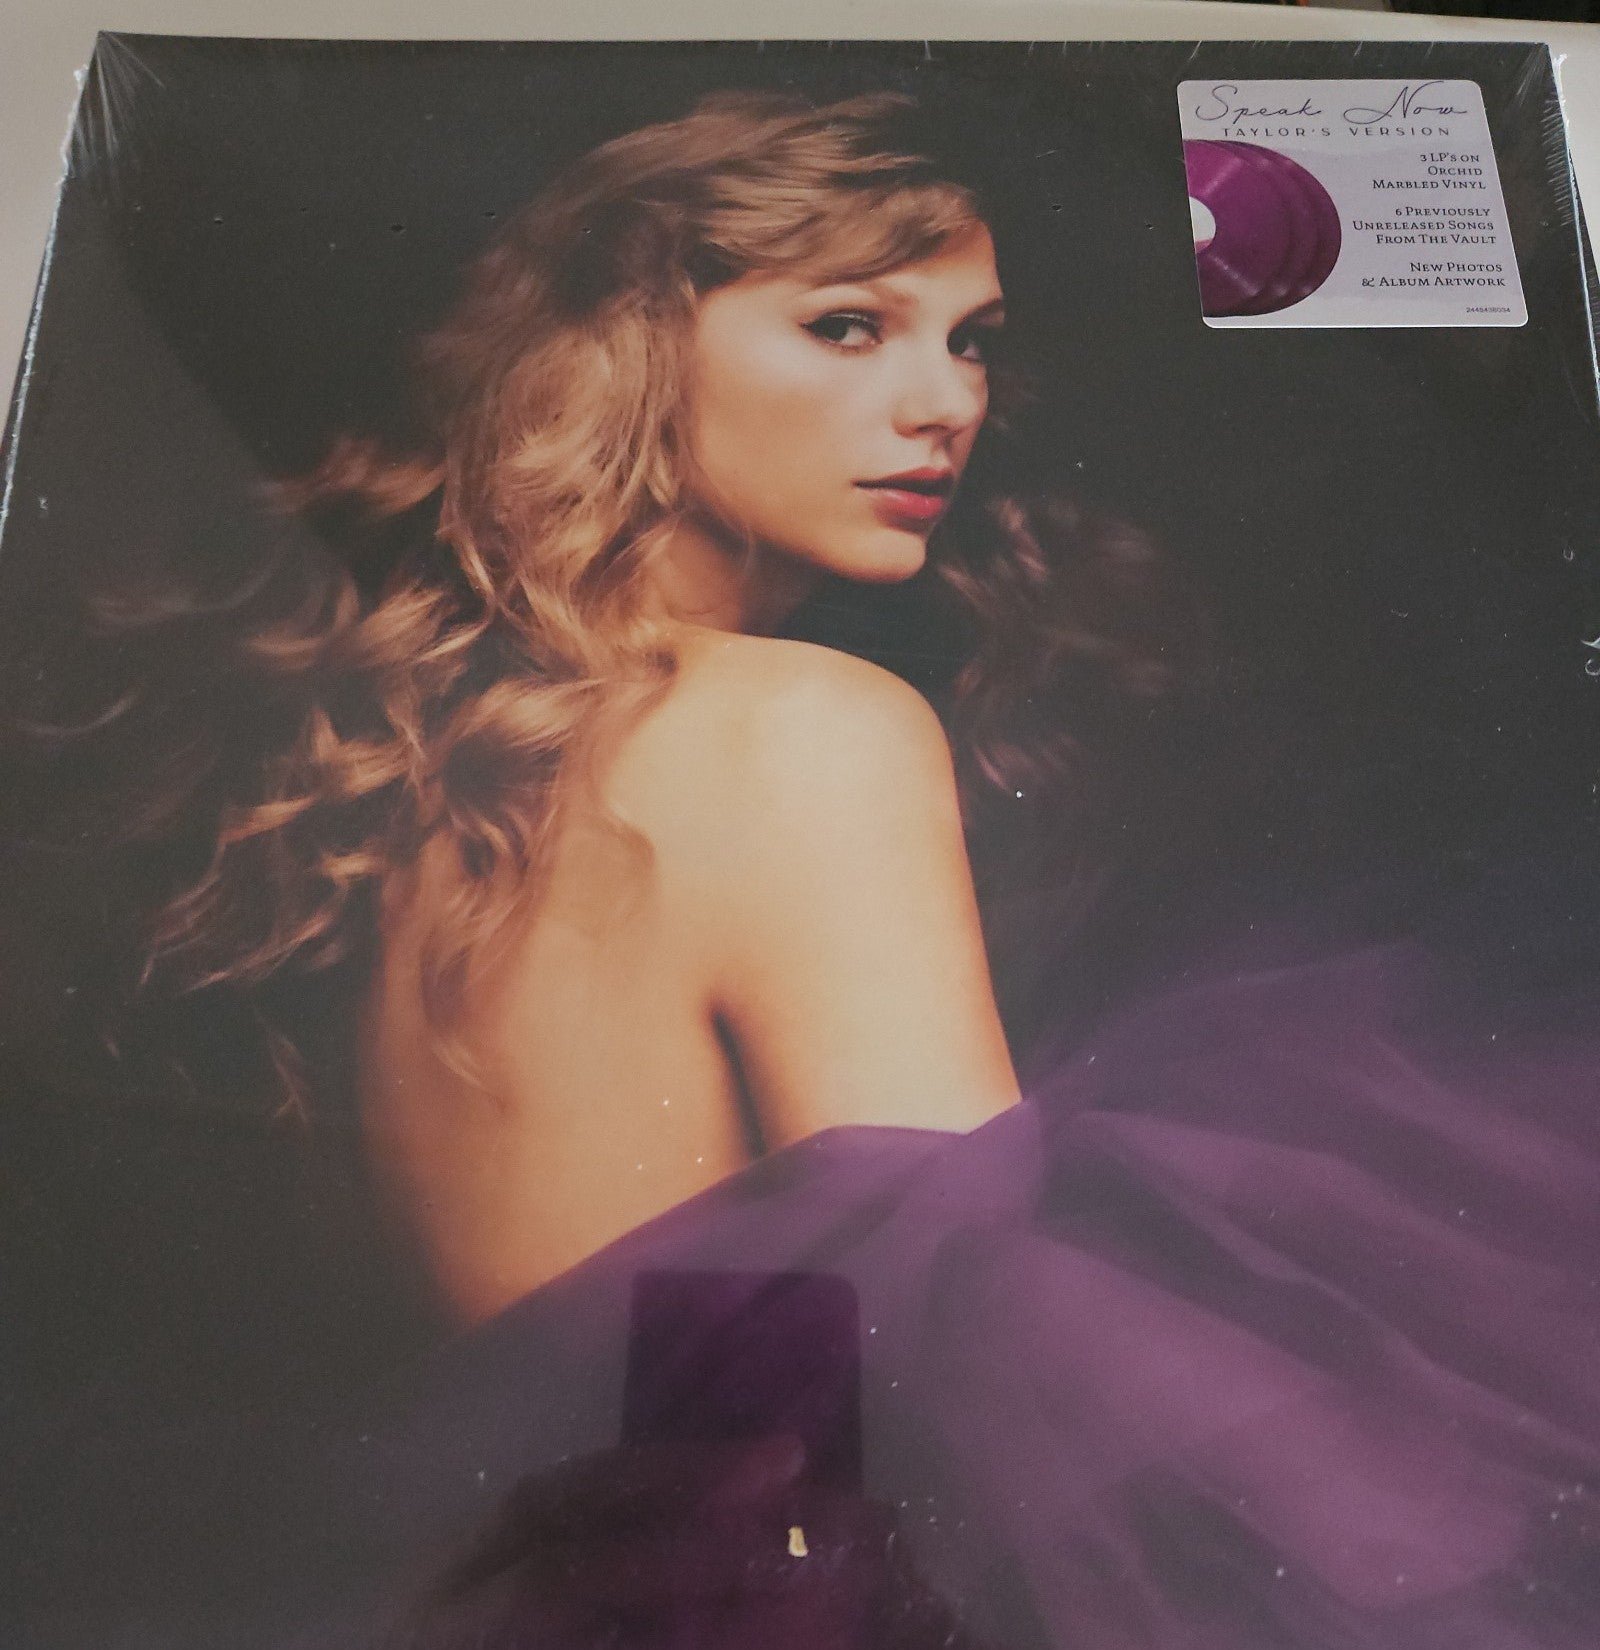 Taylor Swift speak now vinyl new 8oXoPtXb0